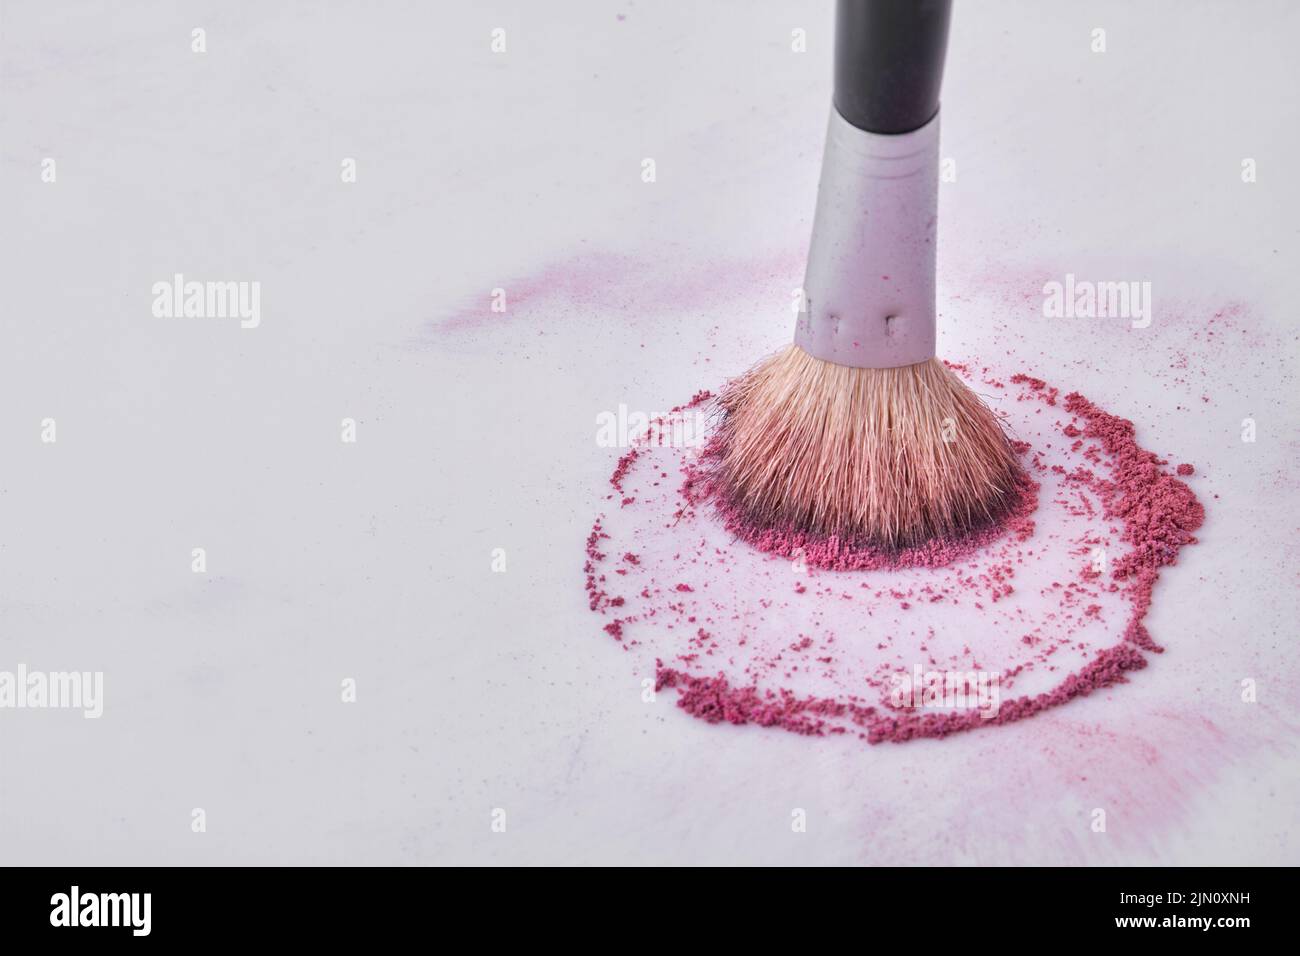 Primer plano cepillo de maquillaje con polvo púrpura. Espacio libre para texto. Foto de stock